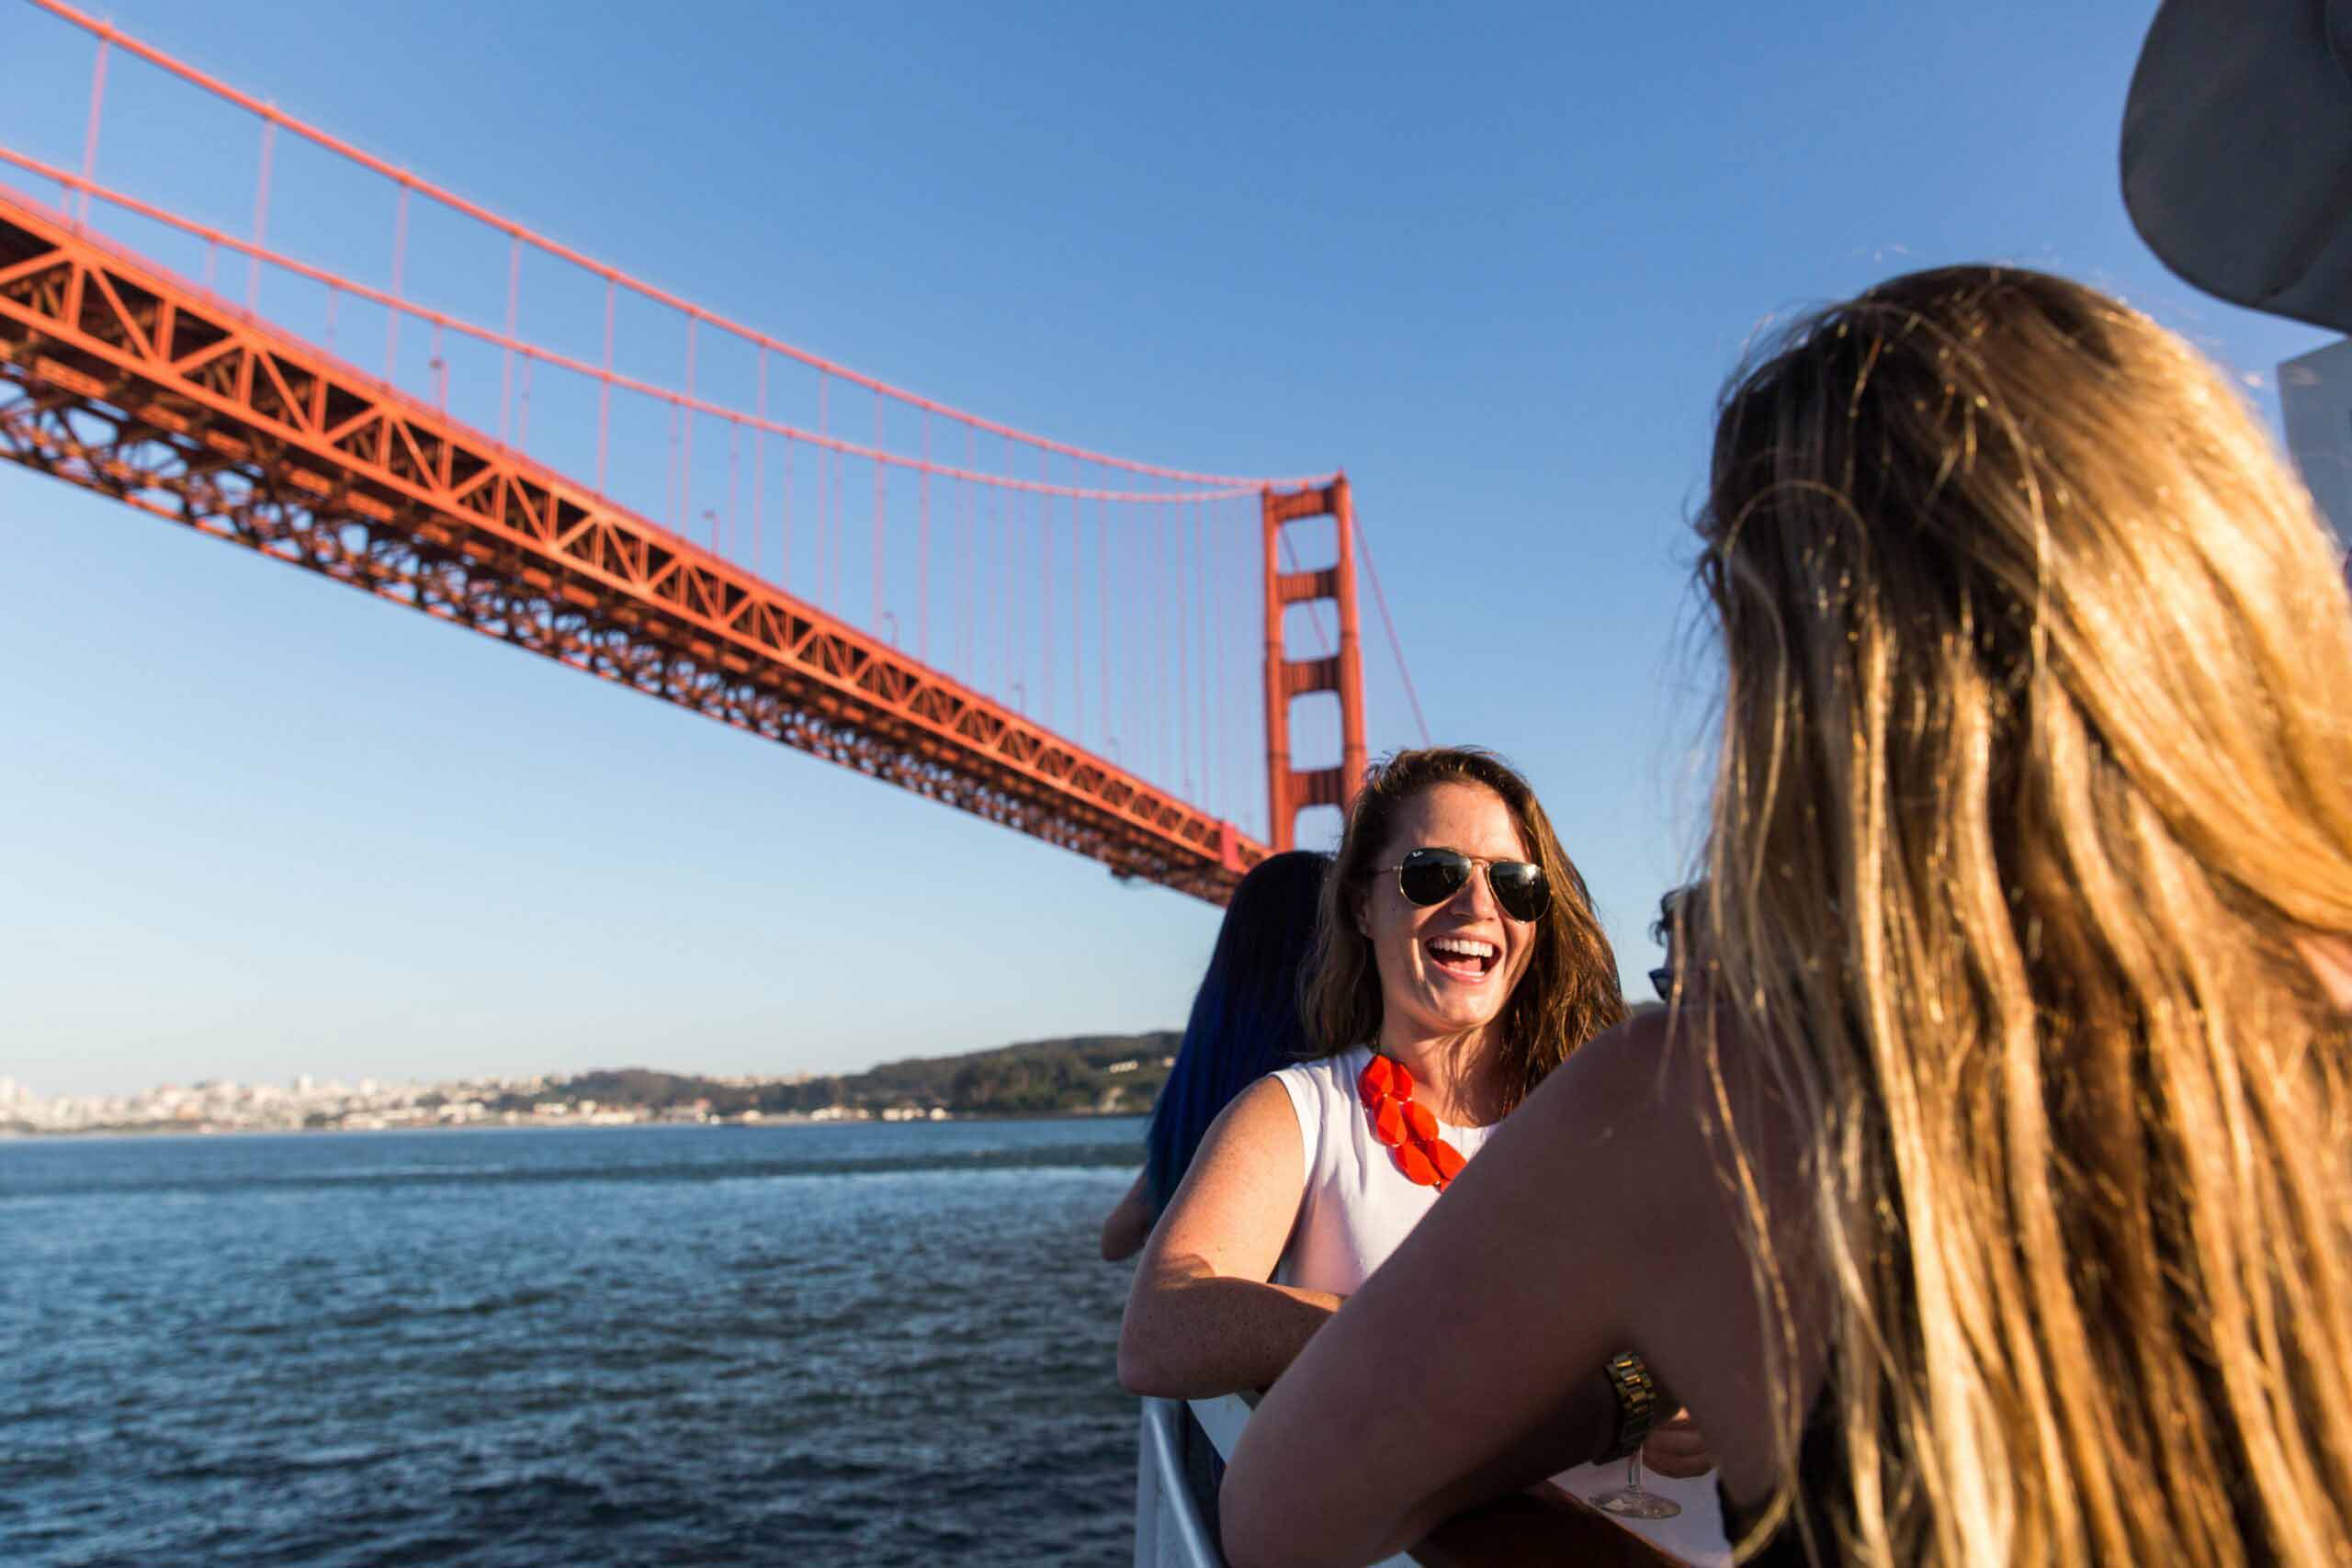 Мост Сан-Франциско